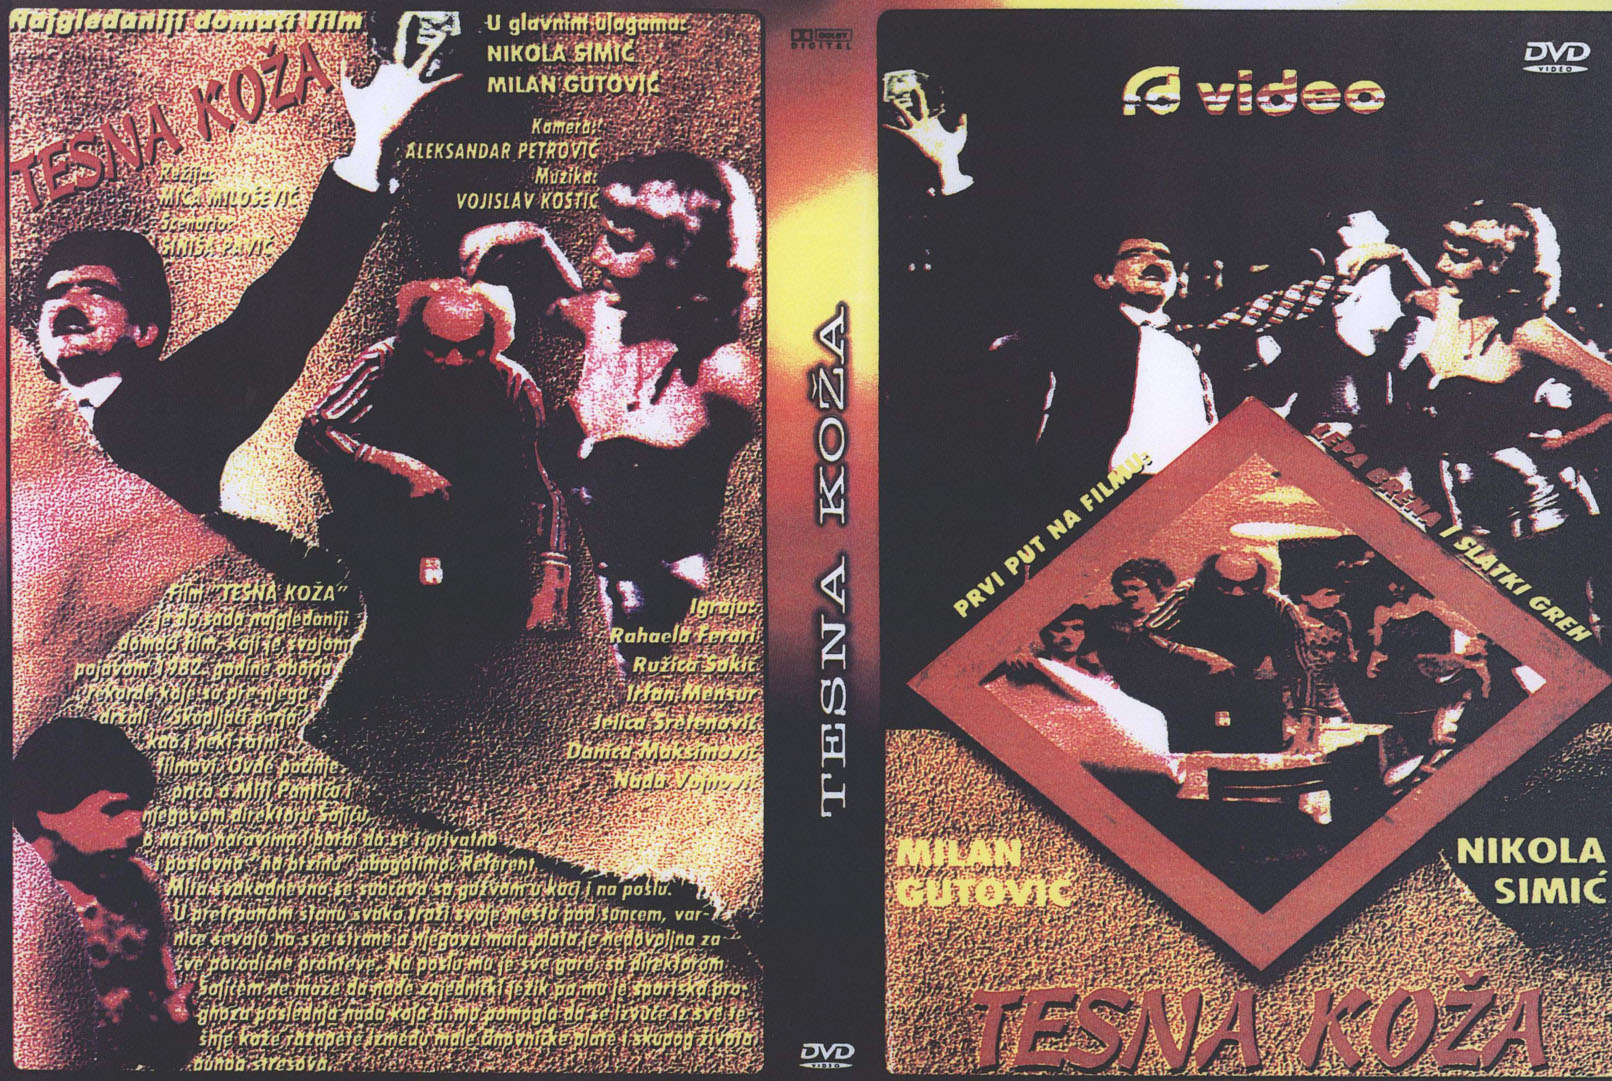 Click to view full size image -  DVD Cover - T - tesna_koza_dvd - tesna_koza_dvd.jpg